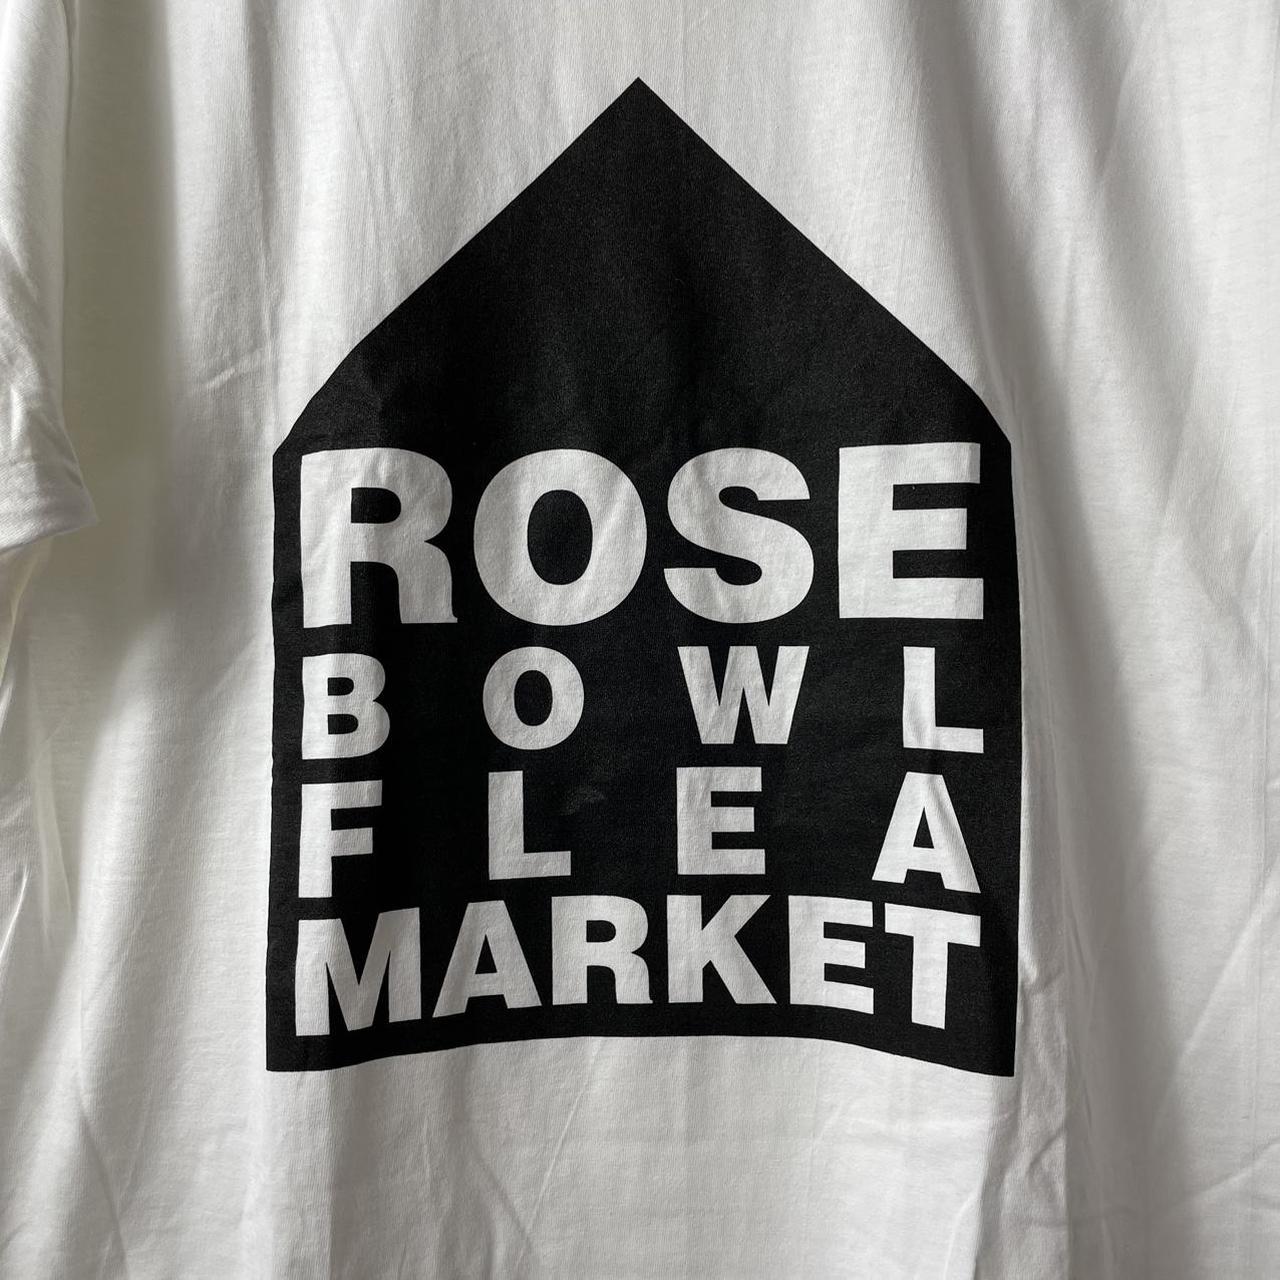 Dover Street Market Men's White T-shirt (2)